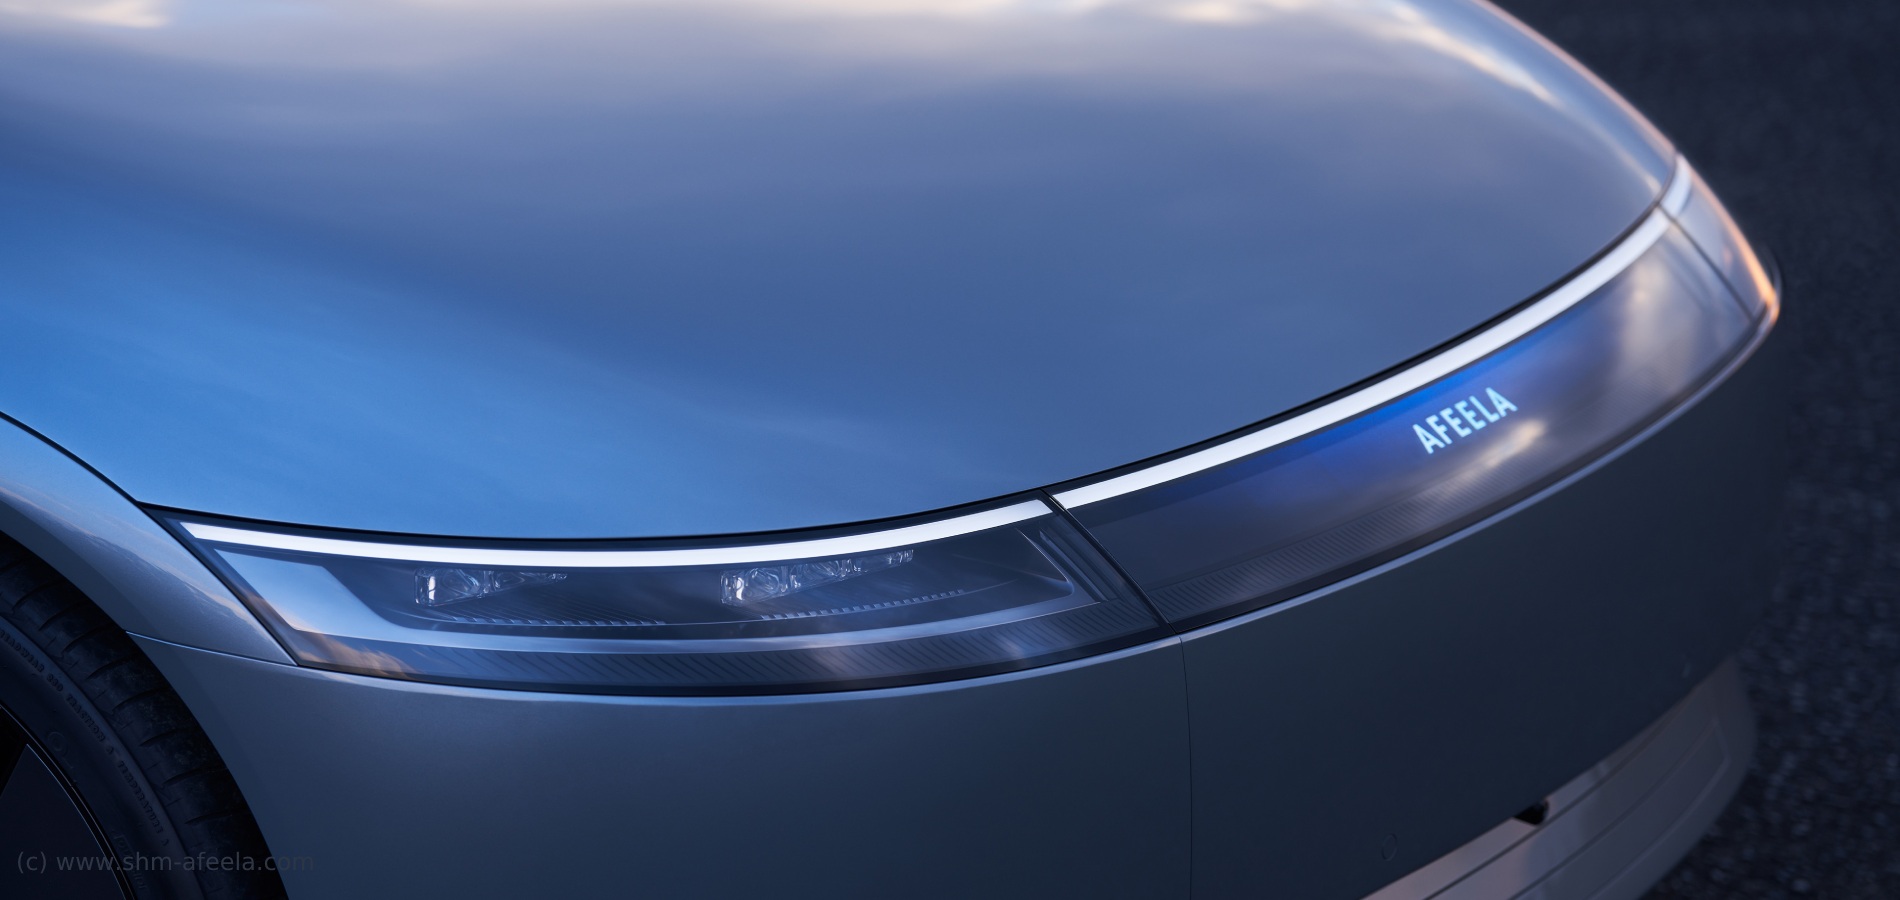 Компании Sony и Honda представили первый совместный проект – электромобиль